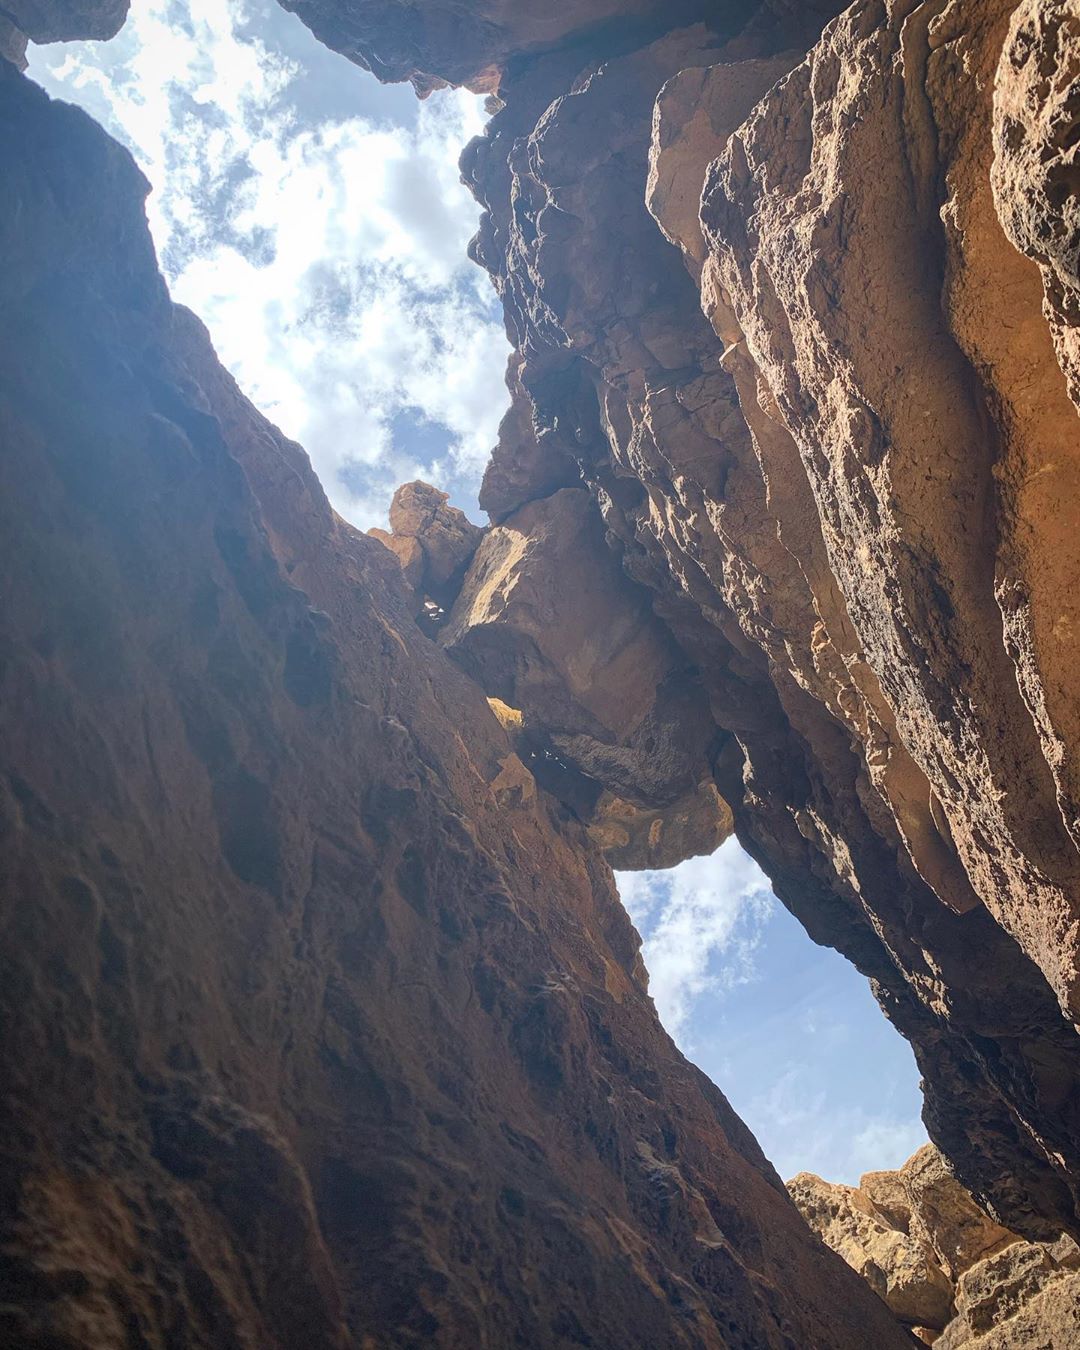 creepy cave in arizona